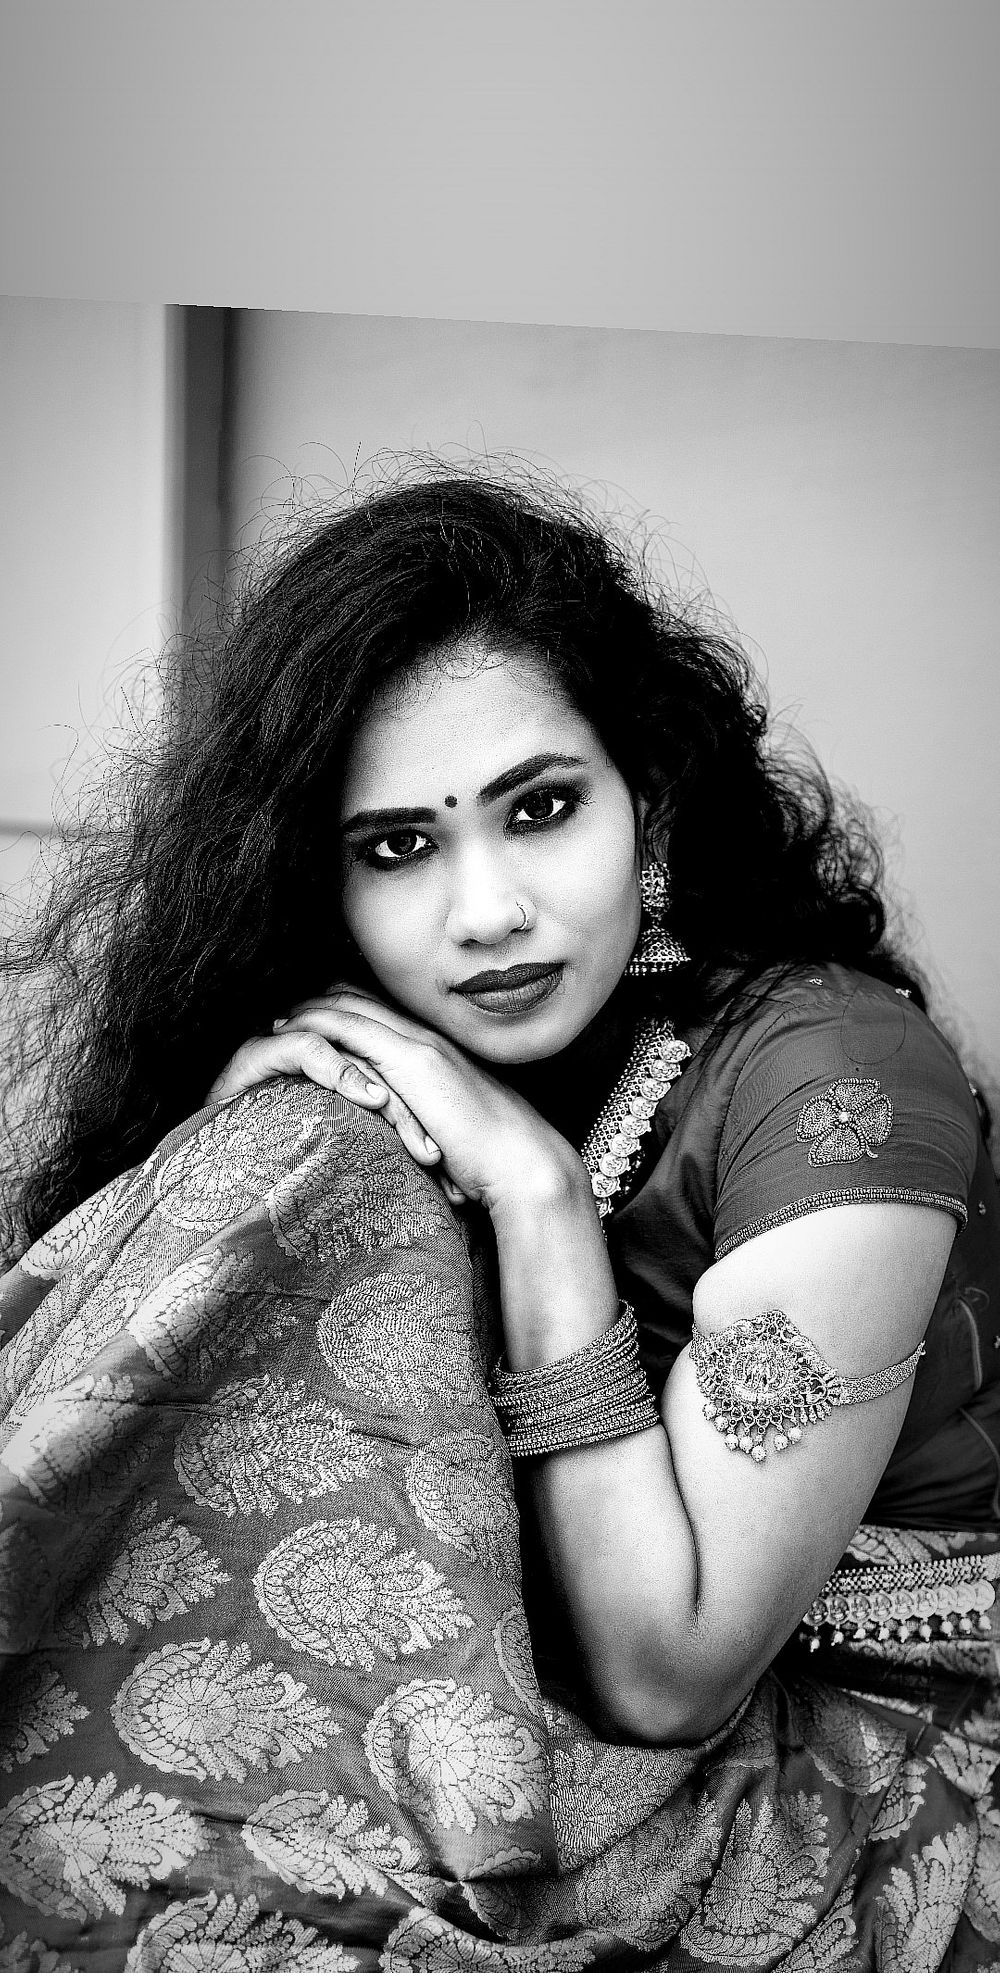 Photo By Makeup Artist Kalai - Bridal Makeup